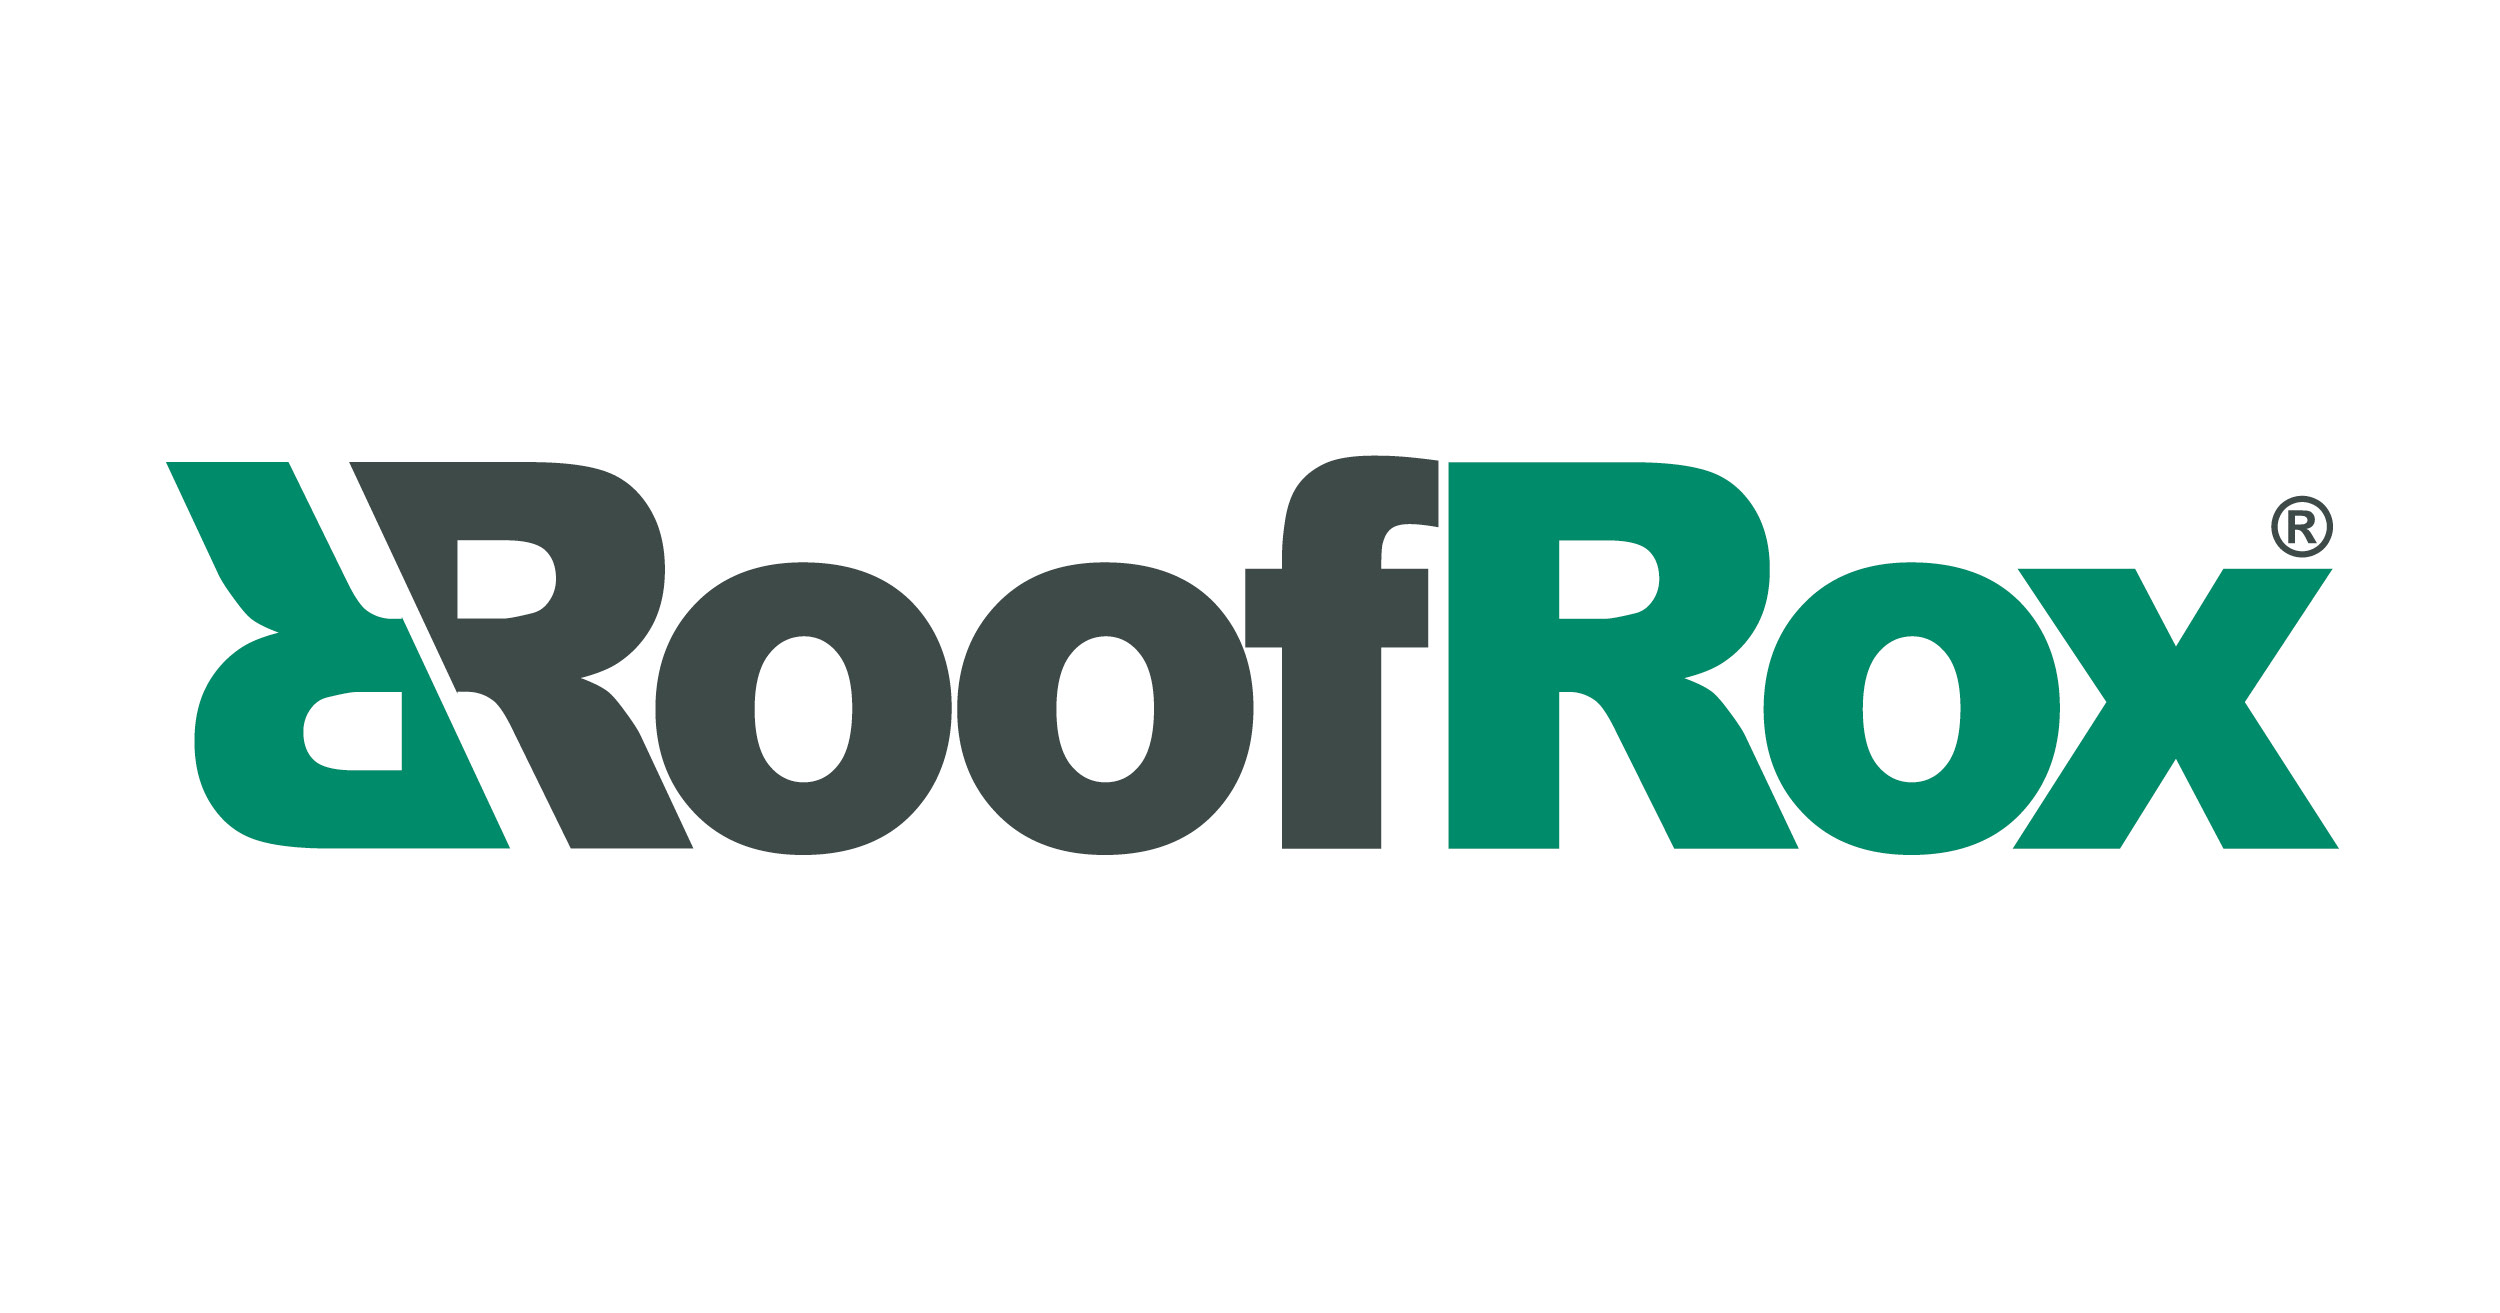 (c) Roofrox.com